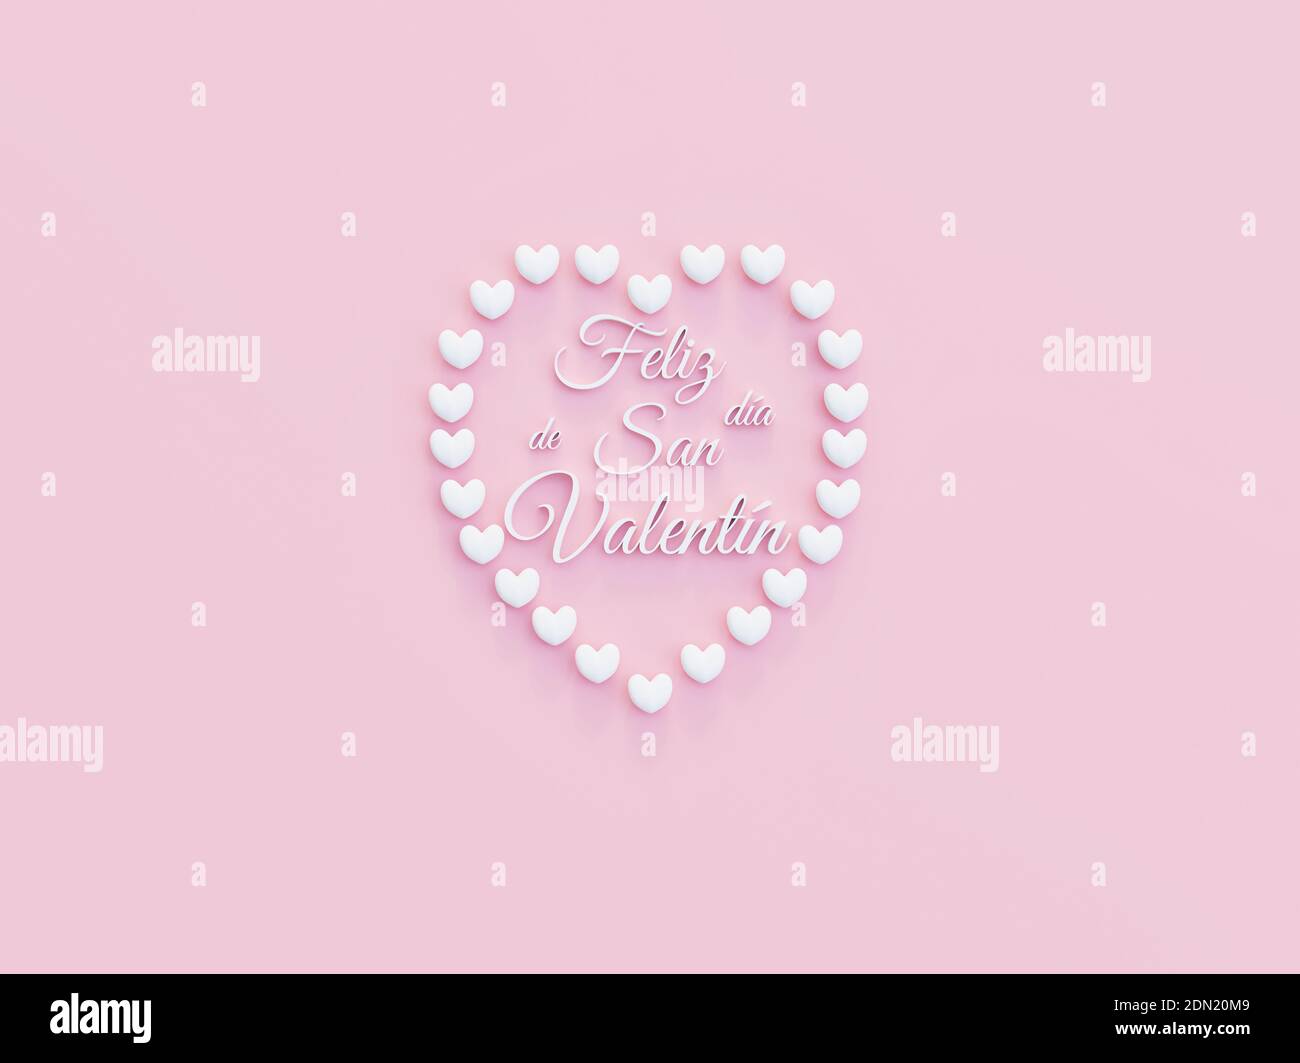 Corazon formado con corazones con el texto de Feliz dia De San Valentin -Happy Valentines Day texte espagnol - 3d Illustration Banque D'Images